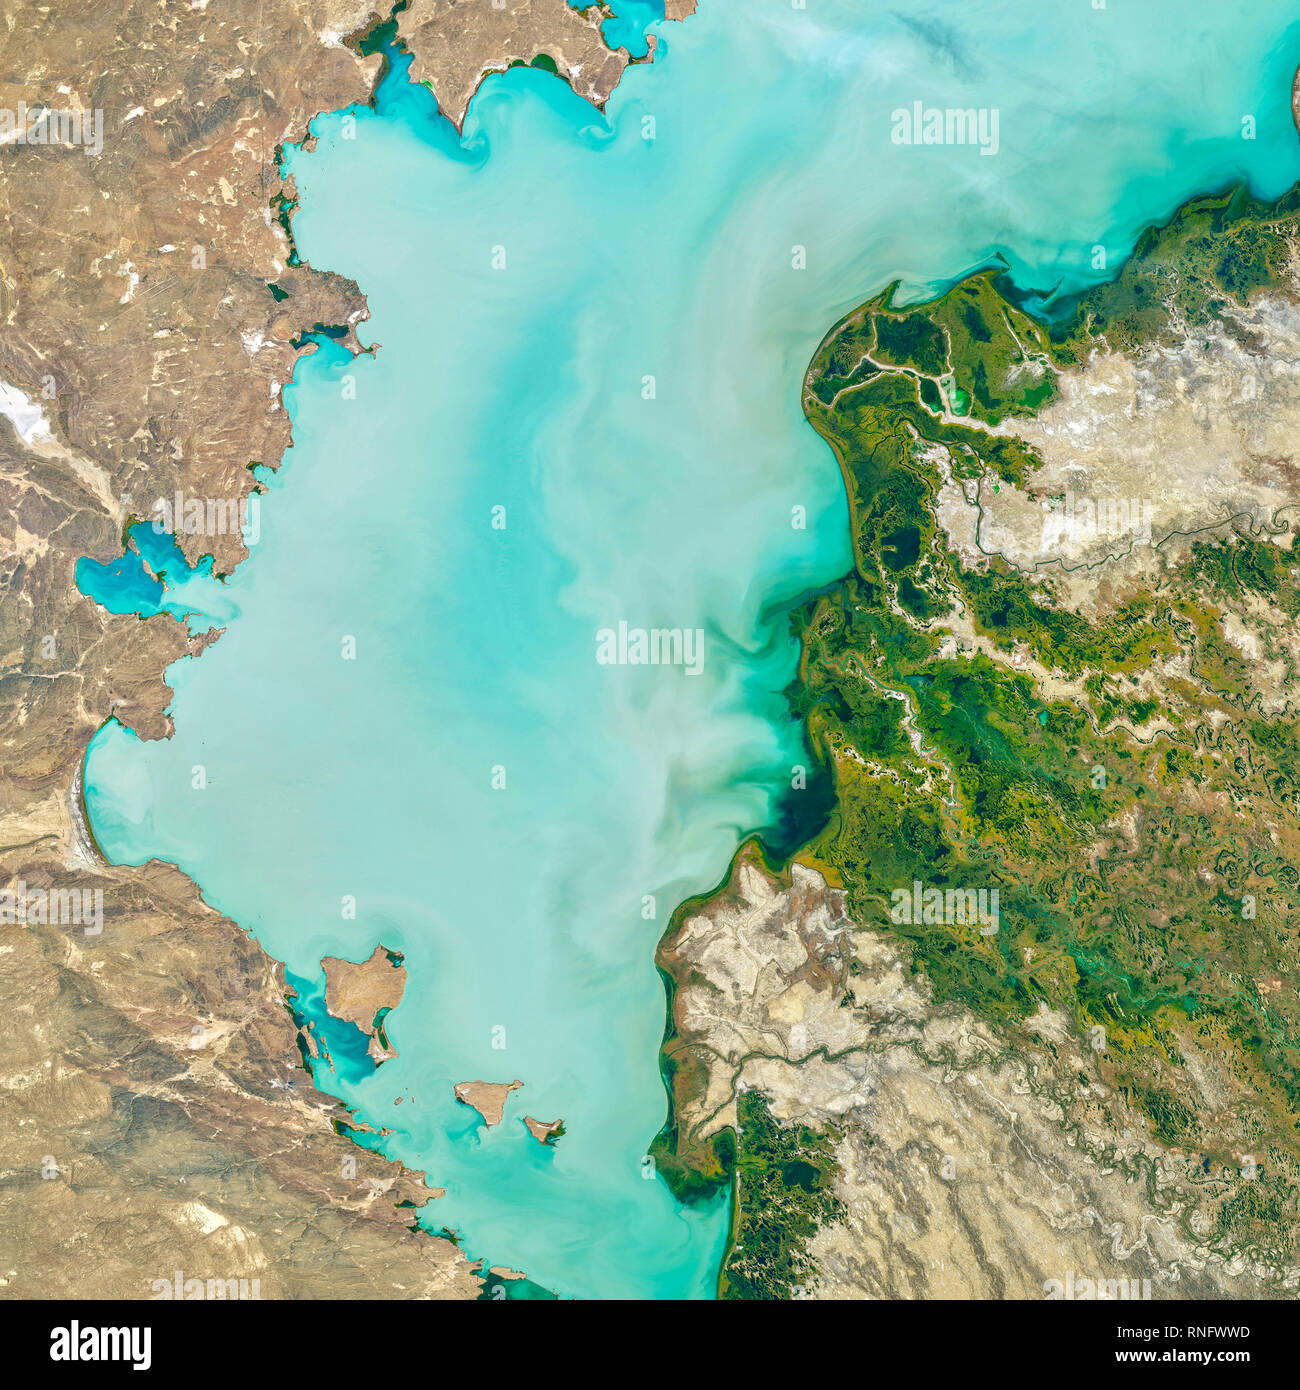 El Lago Baljash, Kazajstán, es el lago más grande de Asia Central y la 15ª más grande del mundo. Foto de stock